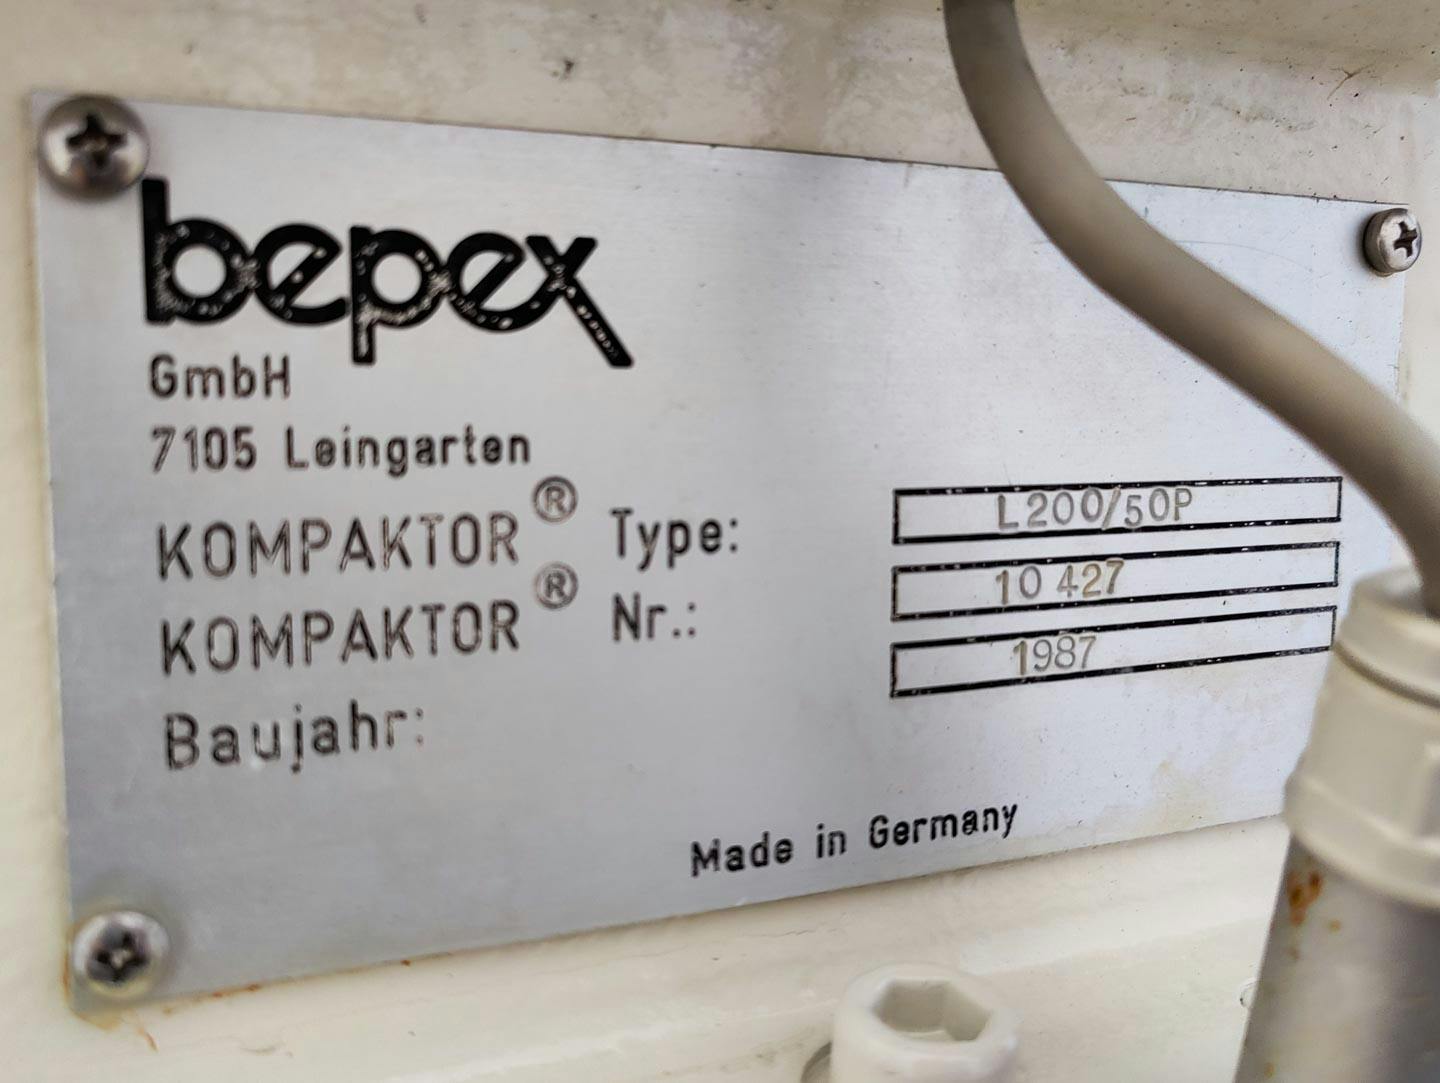 Bepex L-200/50P - Compactador de rodillos - image 14